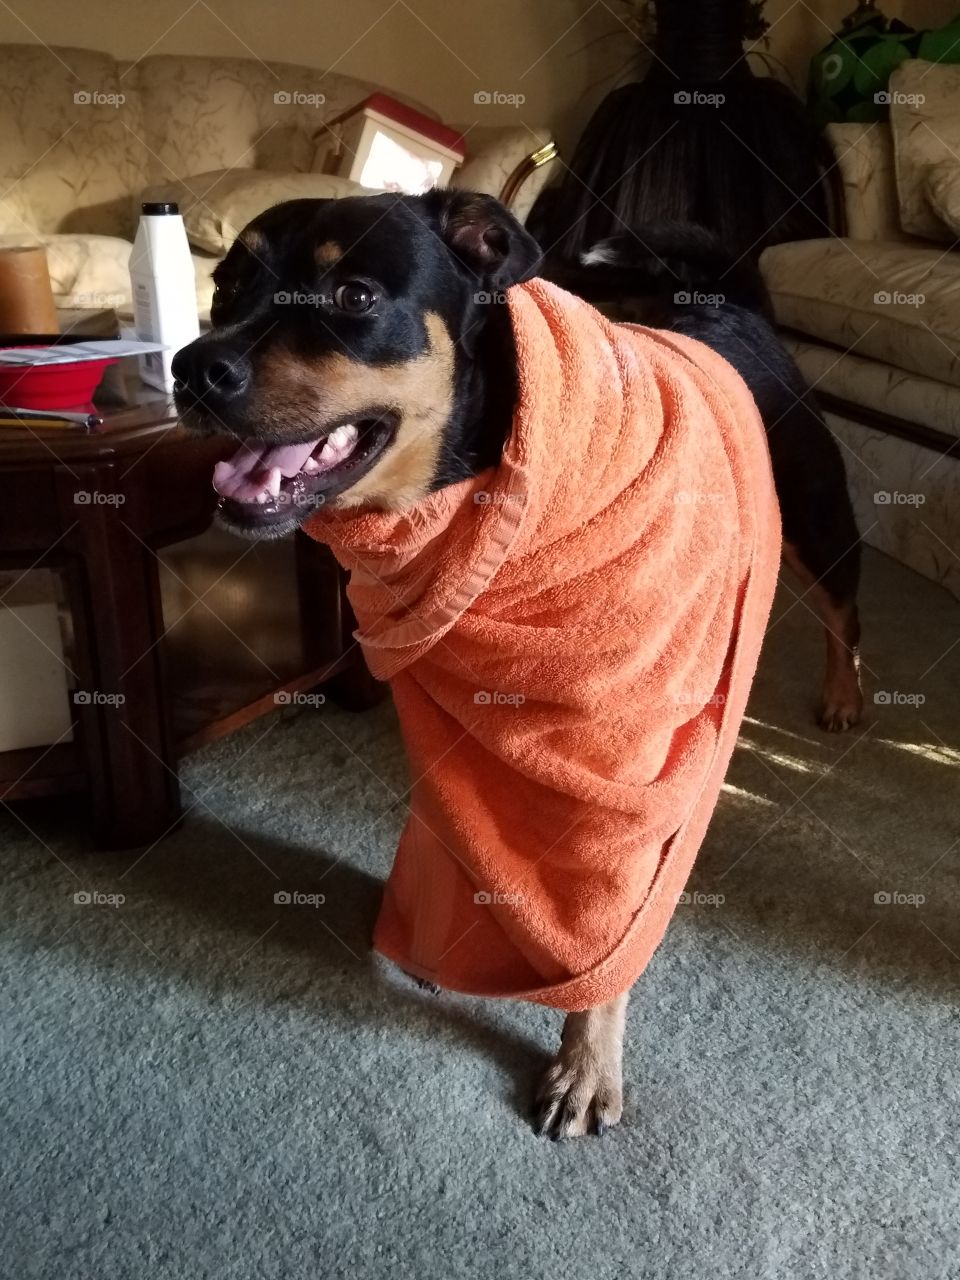 milo in her orange towel